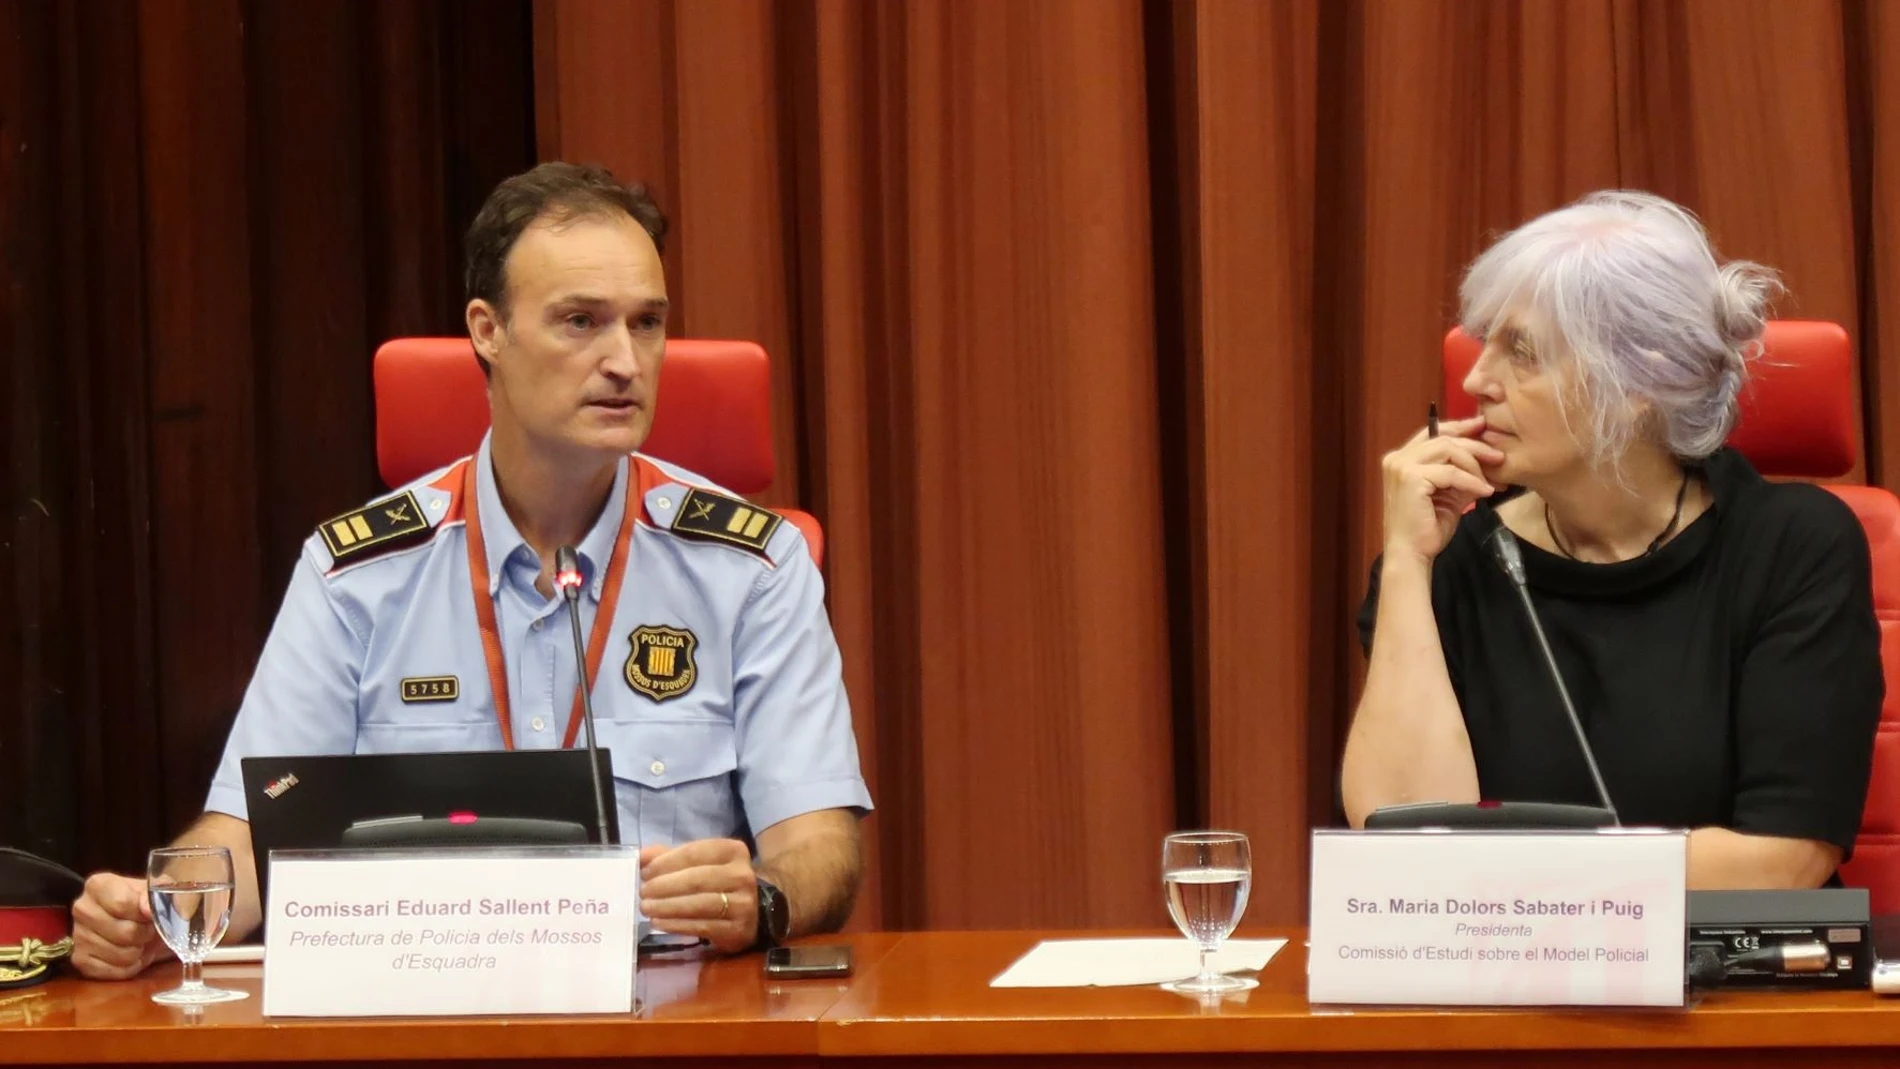 Imagen de la comparecencia del comisario de los Mossos d'Esquadra, Eduard Sallent, en la Comisión de Estudio del Modelo Policial en el Parlament de Catalunya
PARLAMENT DE CATALUNYA
09/09/2022